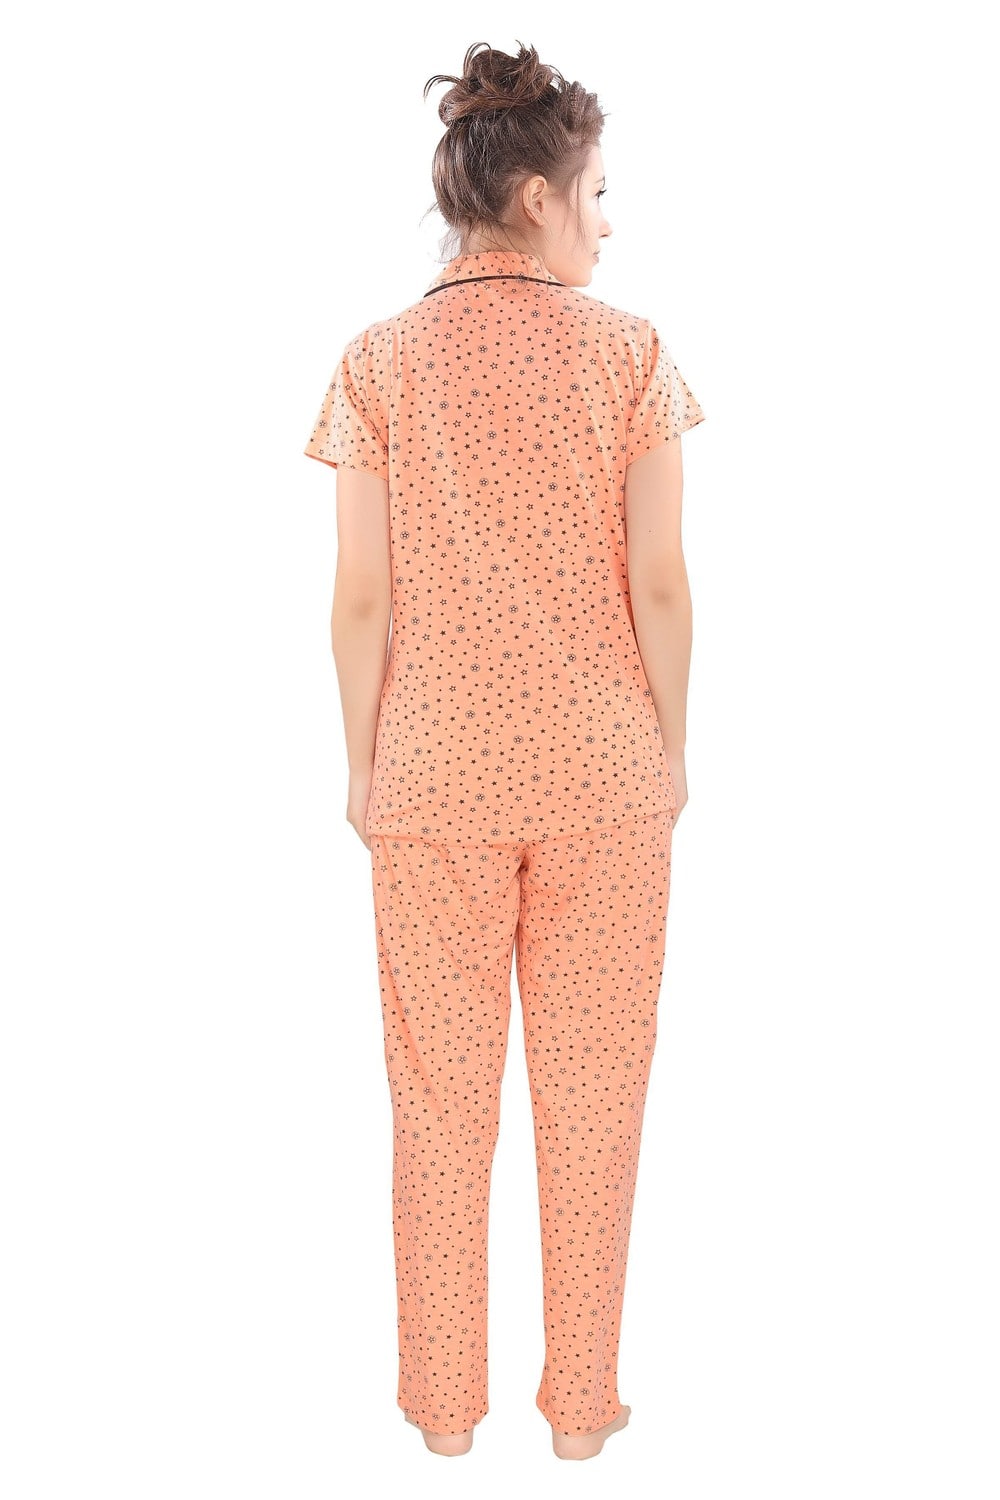 Pierre Donna Women's Cotton Pajama set With Pants - Women Sleepwear Orange Color - Dealz Souq